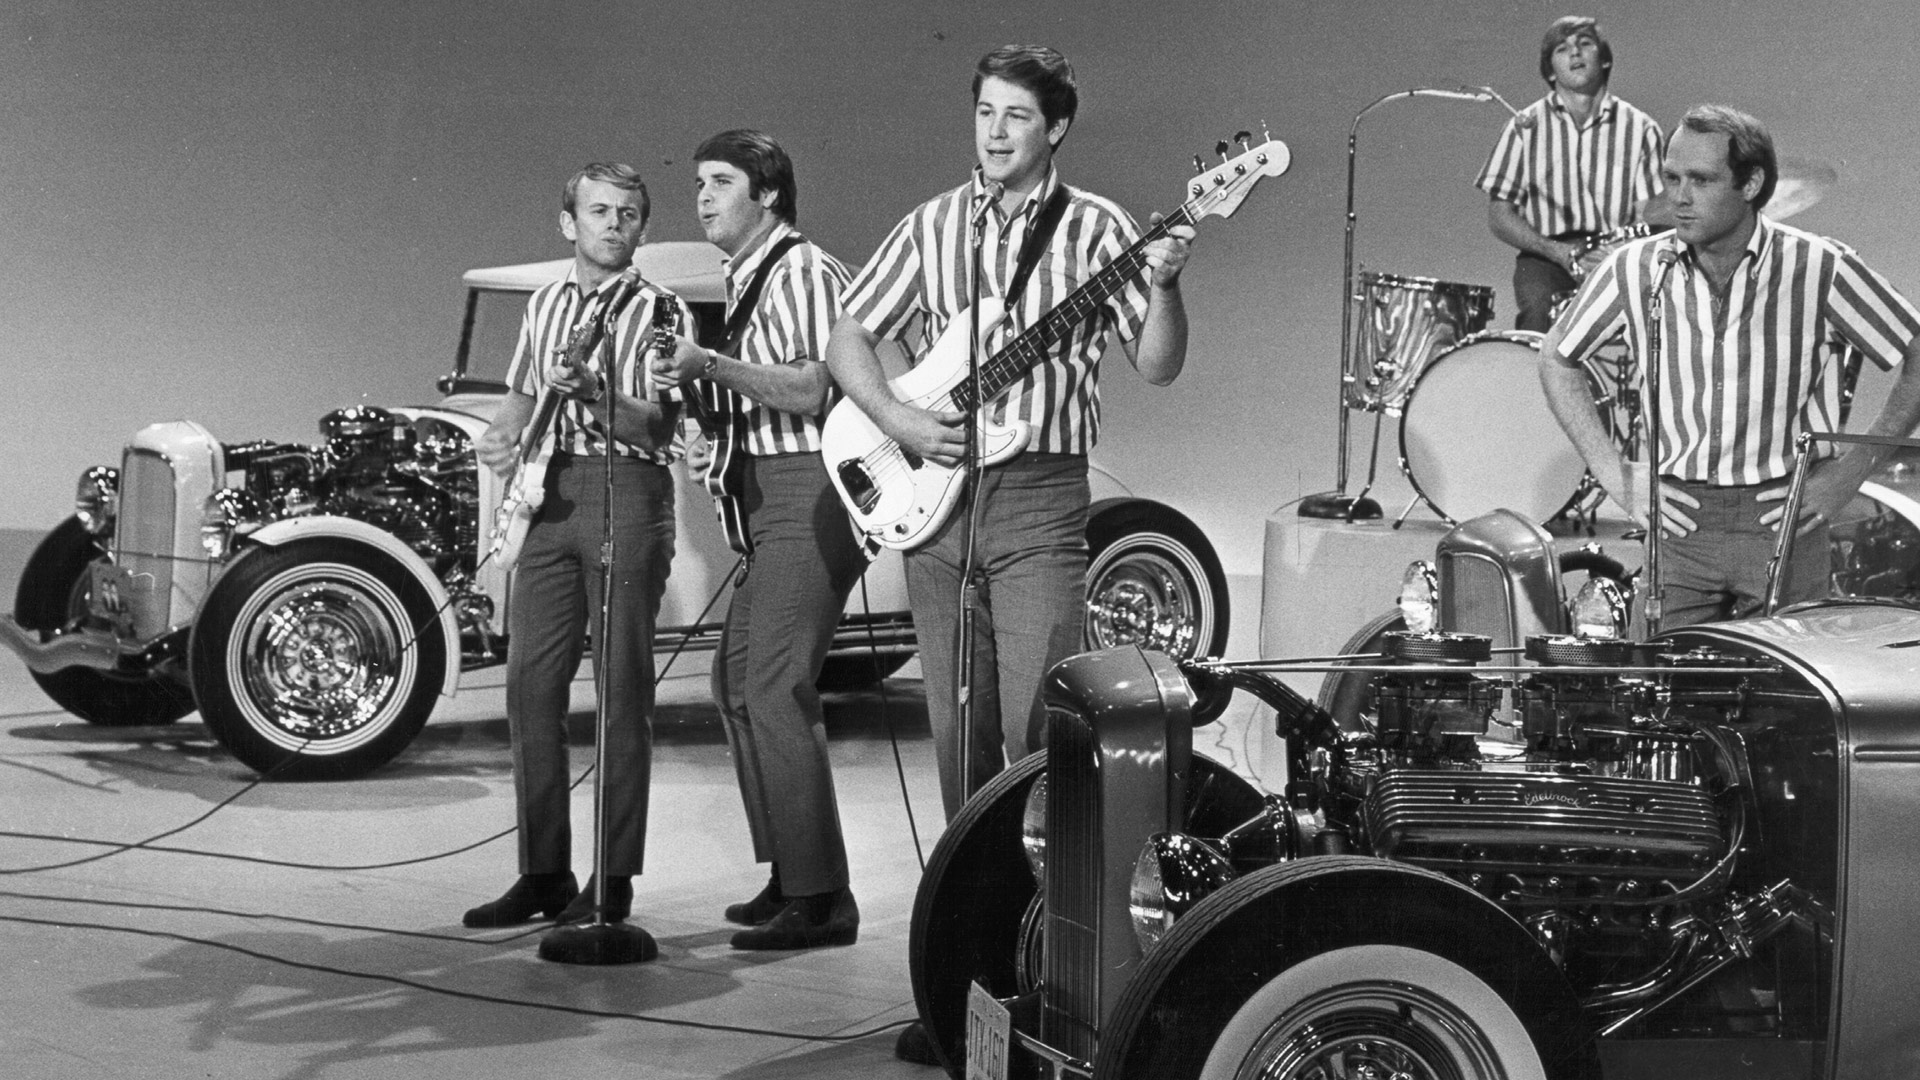 Популярная музыка 60. Группа the Beach boys. The Beach boys 60-е. The Beach boys 1963. The Beach boys 1961.